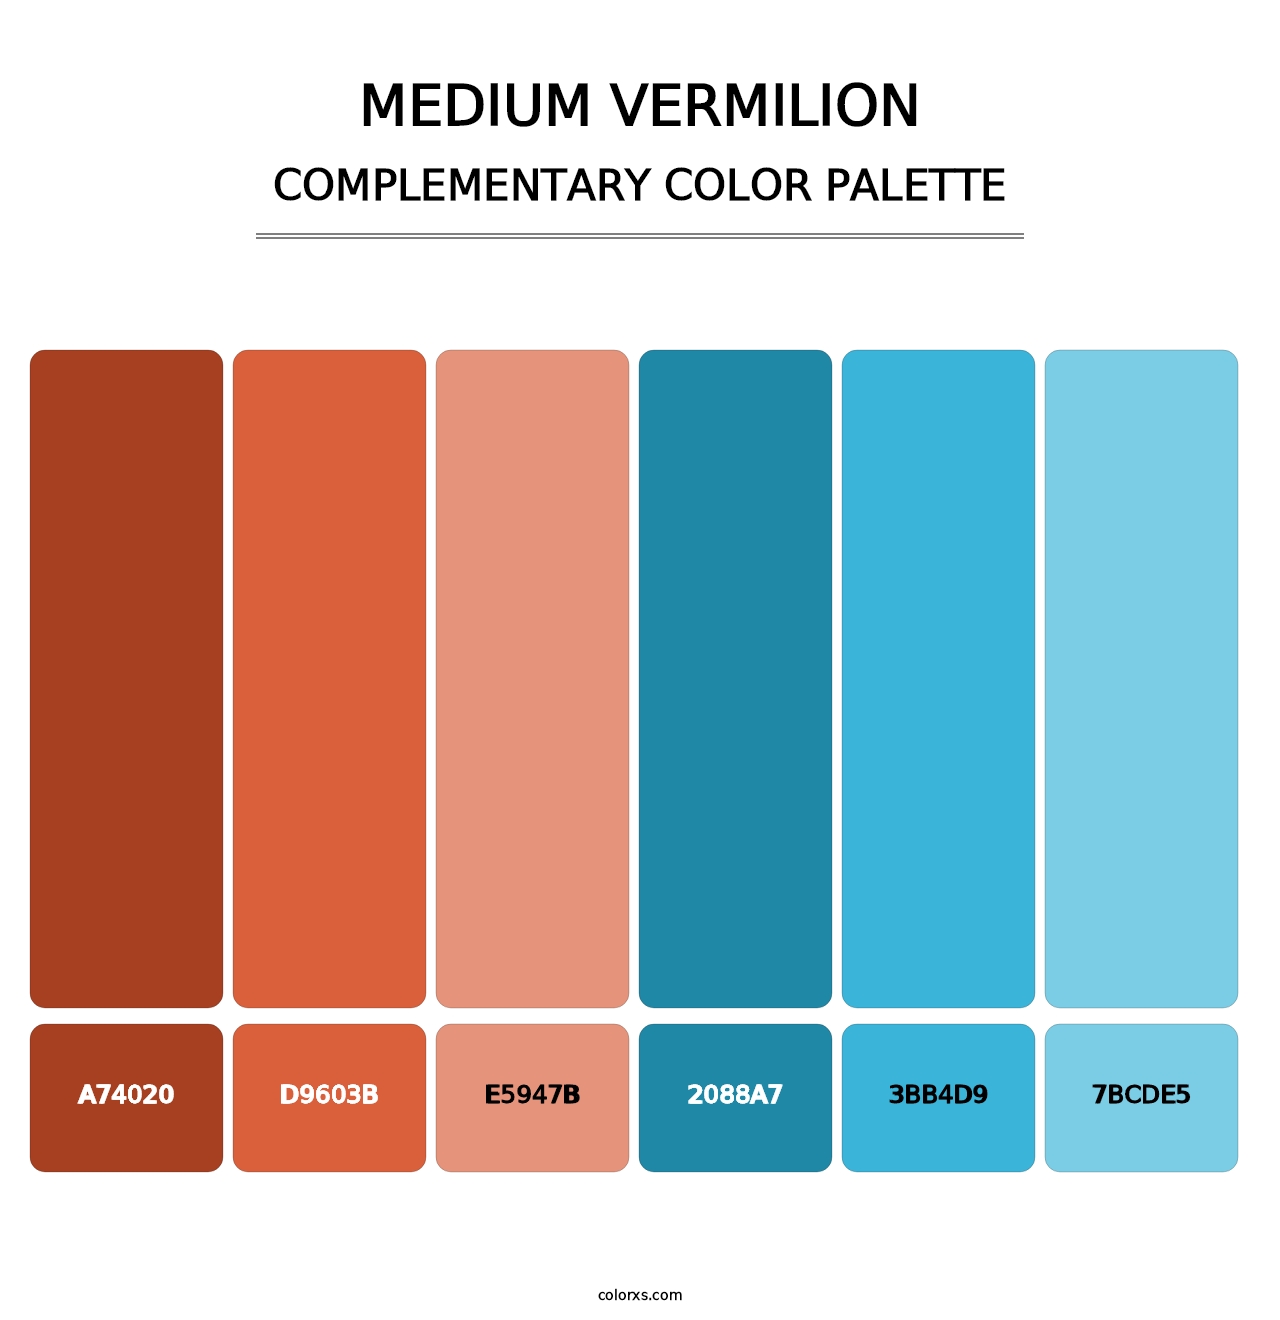 Medium Vermilion - Complementary Color Palette